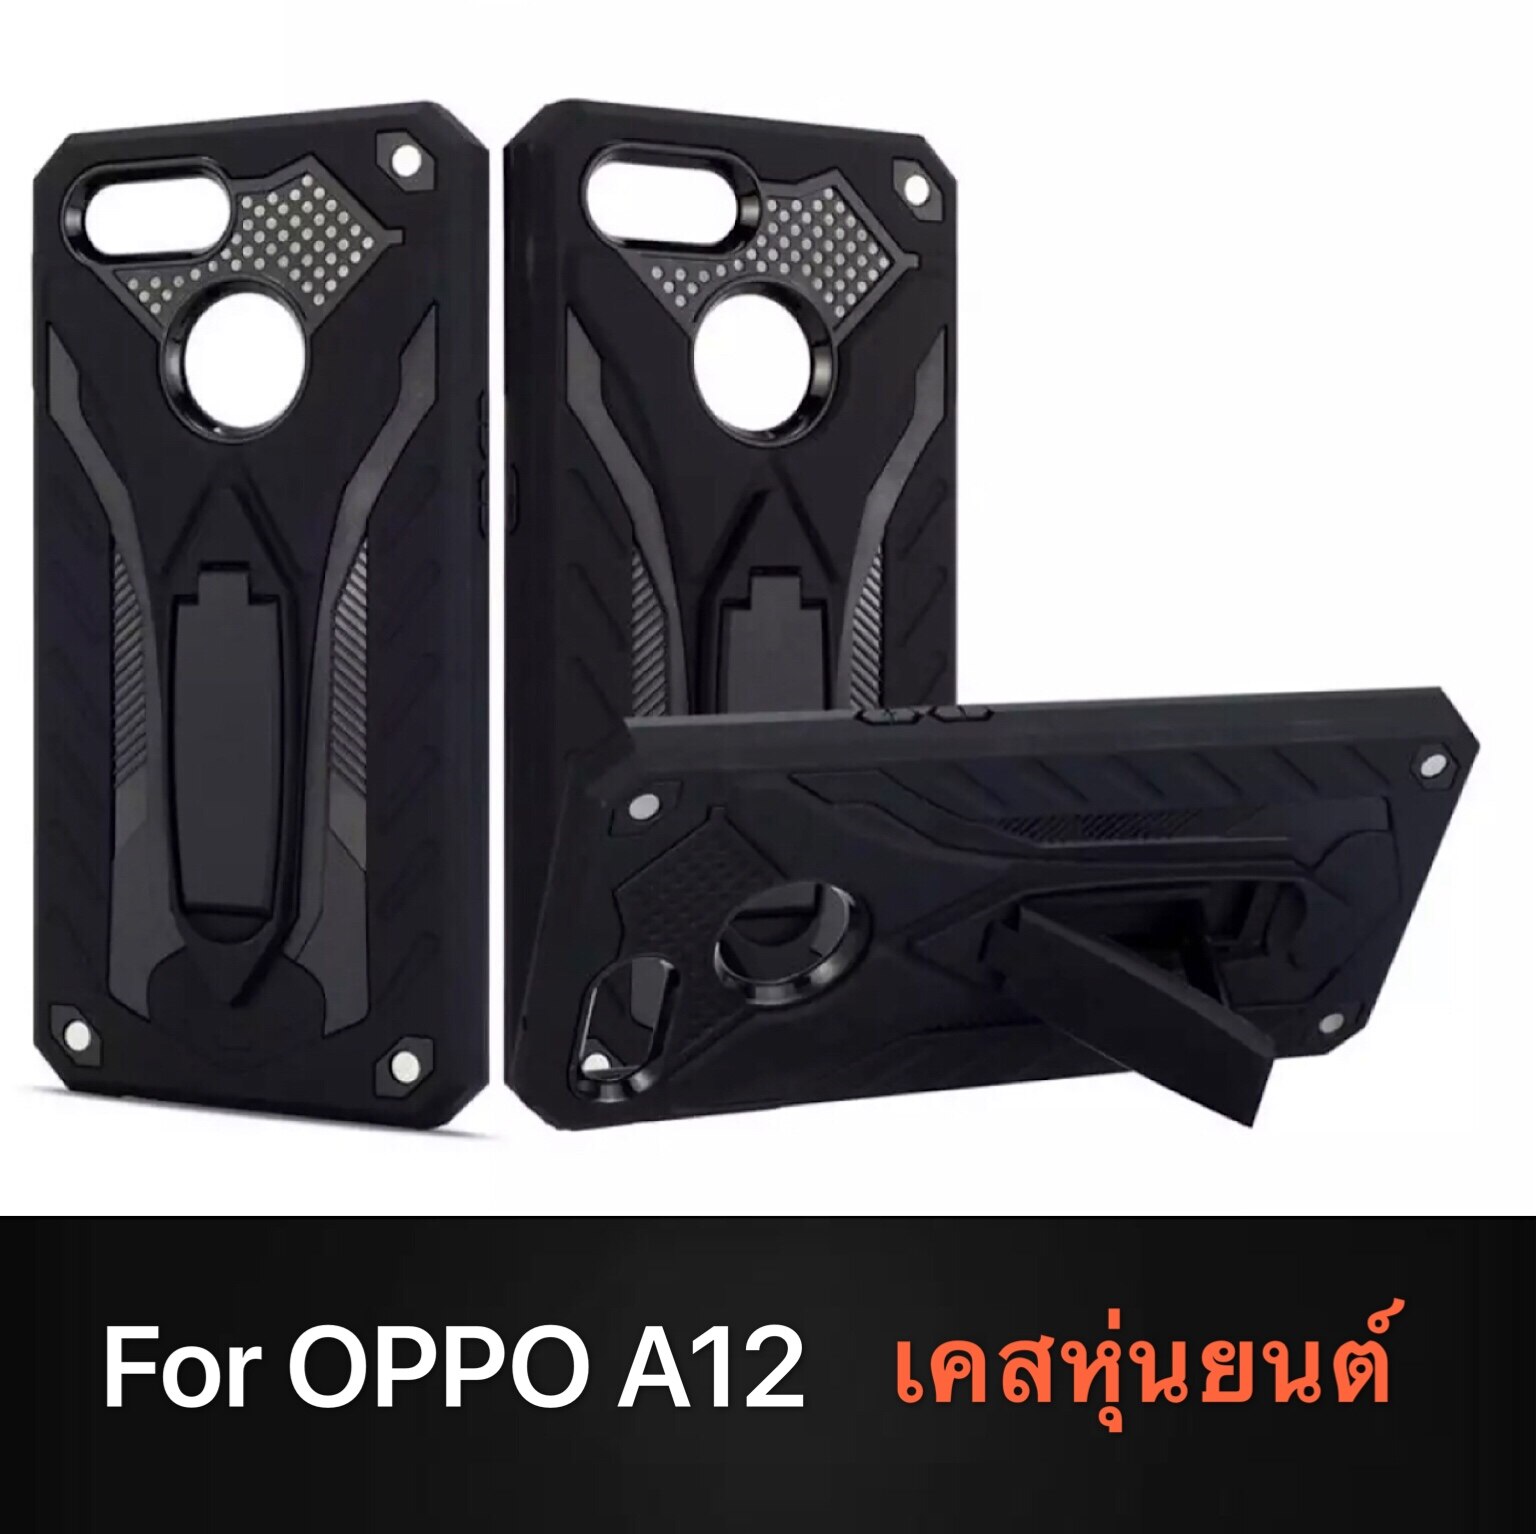 [ส่งจากไทย] Case OPPO A12 เคสออฟโป้เอ12 Oppo A12 เคสหุ่นยนต์ เคสไฮบริด มีขาตั้ง เคสกันกระแทก สินค้าใหม่ TPU CASE